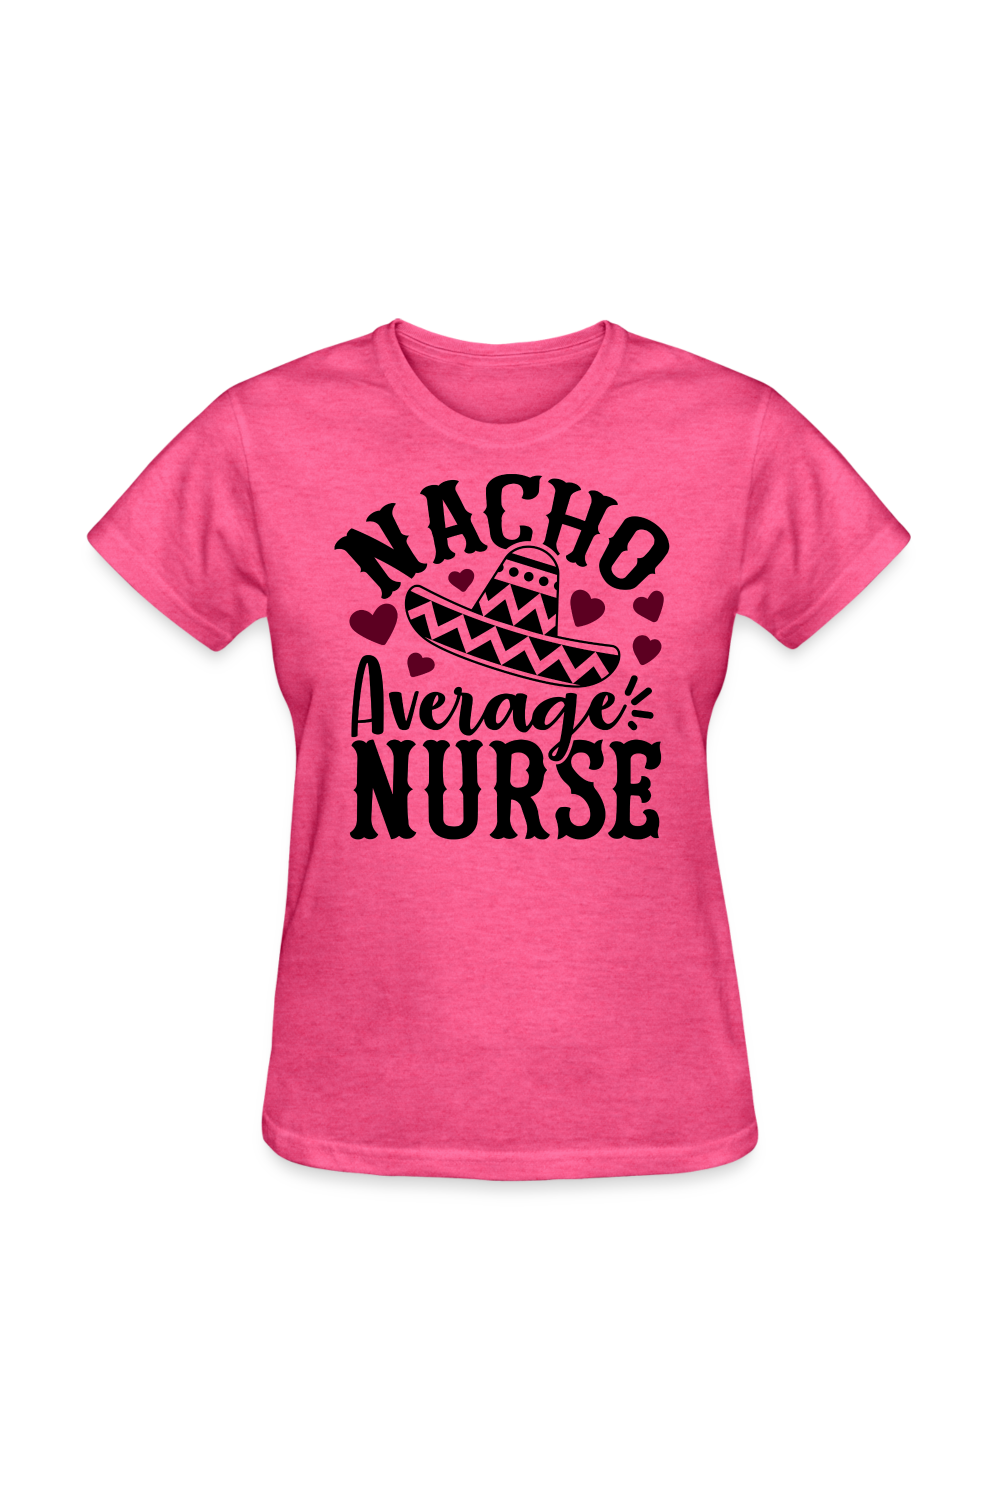 Nacho Average Nurse Women's Nurse T-Shirt - heather pink